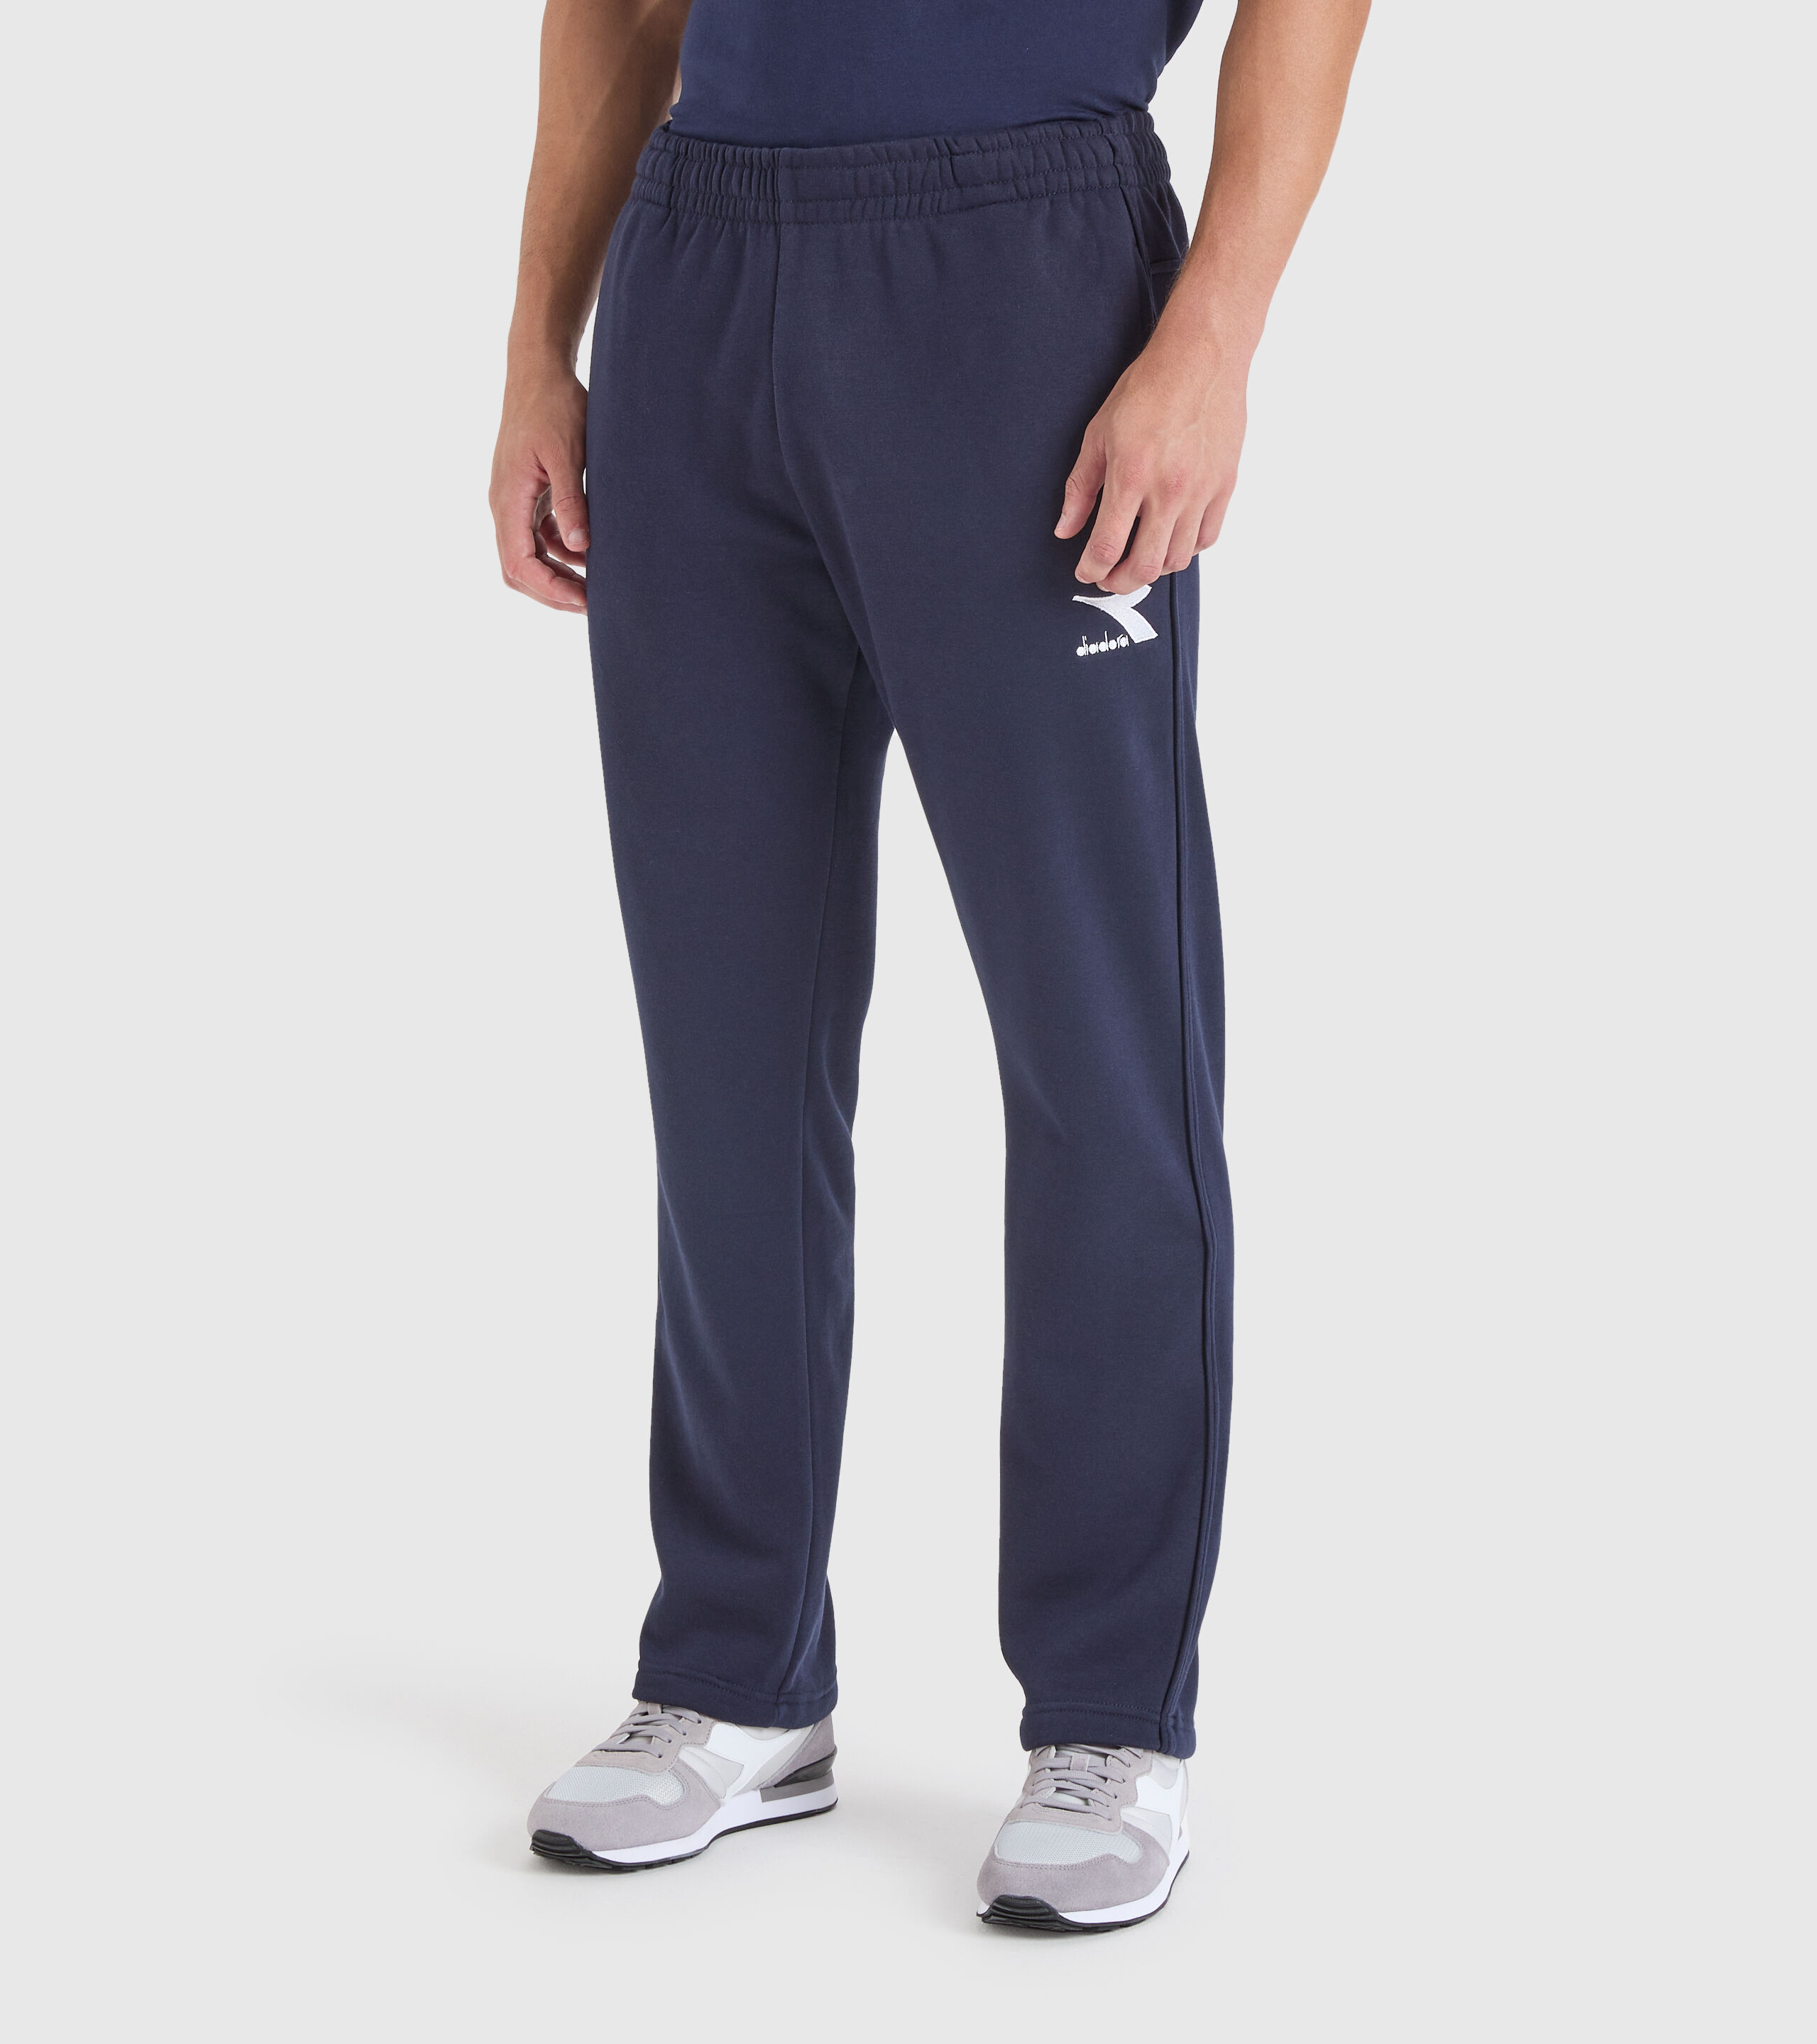 Shop men's pants online - 8848 Altitude